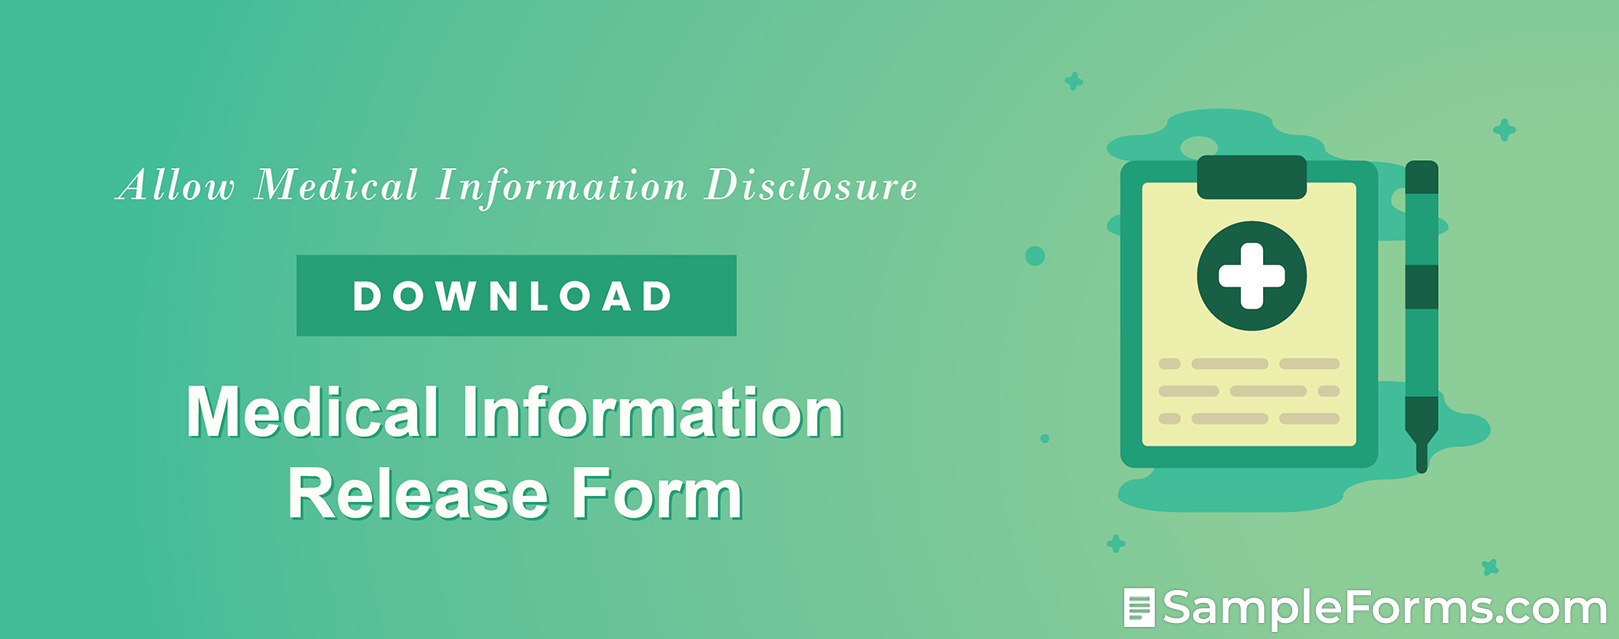 Medical Information Release Form1